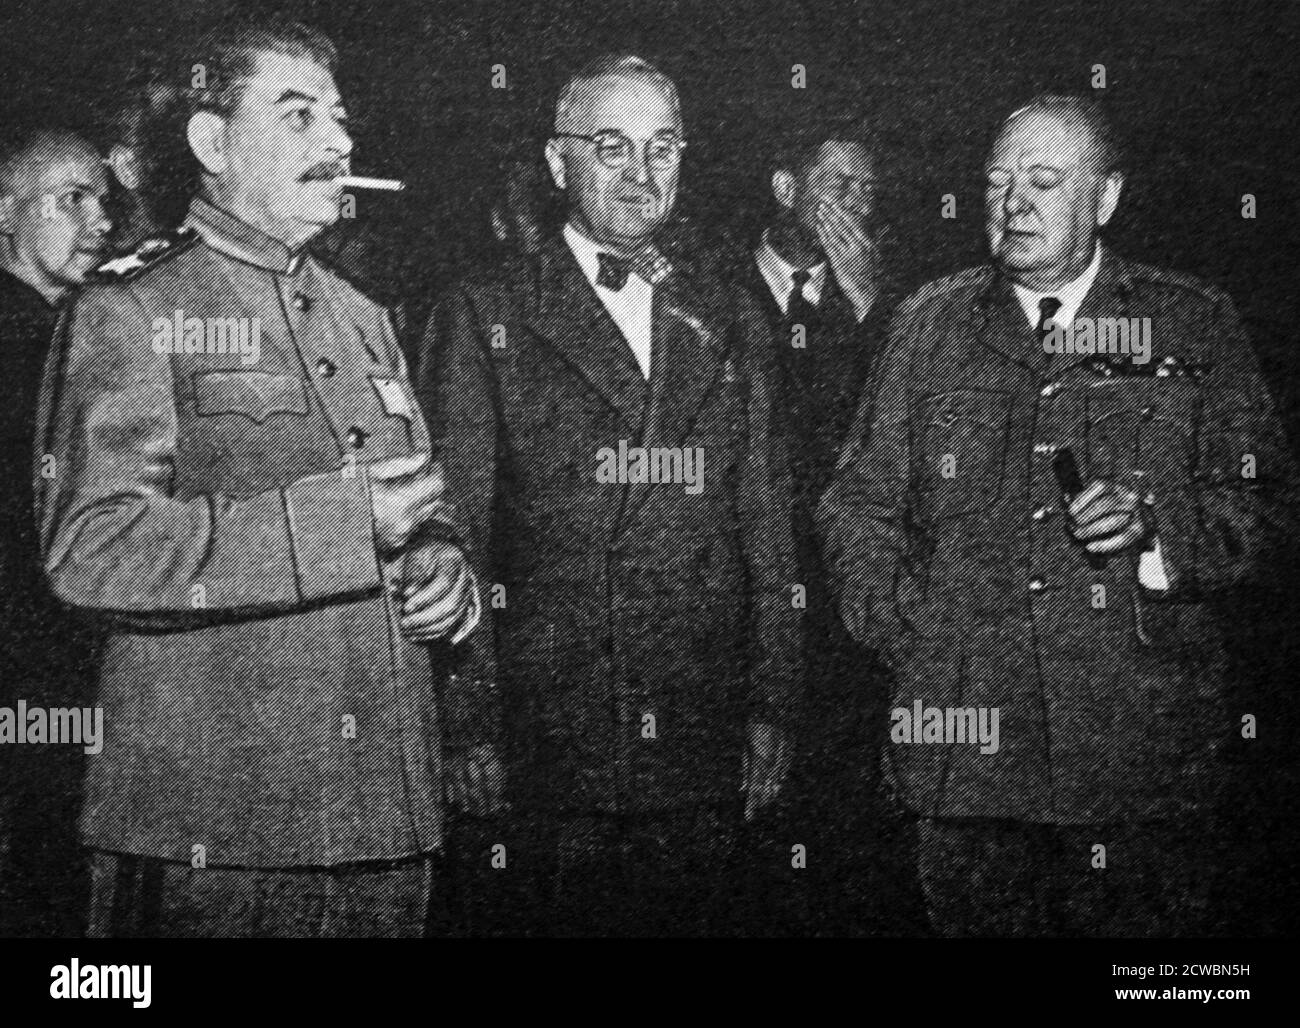 Fotografia in bianco e nero della seconda guerra mondiale (1939-1945) che mostra il leader sovietico Josef Stalin (1878-1953), il presidente degli Stati Uniti Harry S. Truman (1884-1972) e il primo ministro britannico Sir Winston Churchill (1874-1965) alla Conferenza di Potsdam nel luglio 1945. Foto Stock